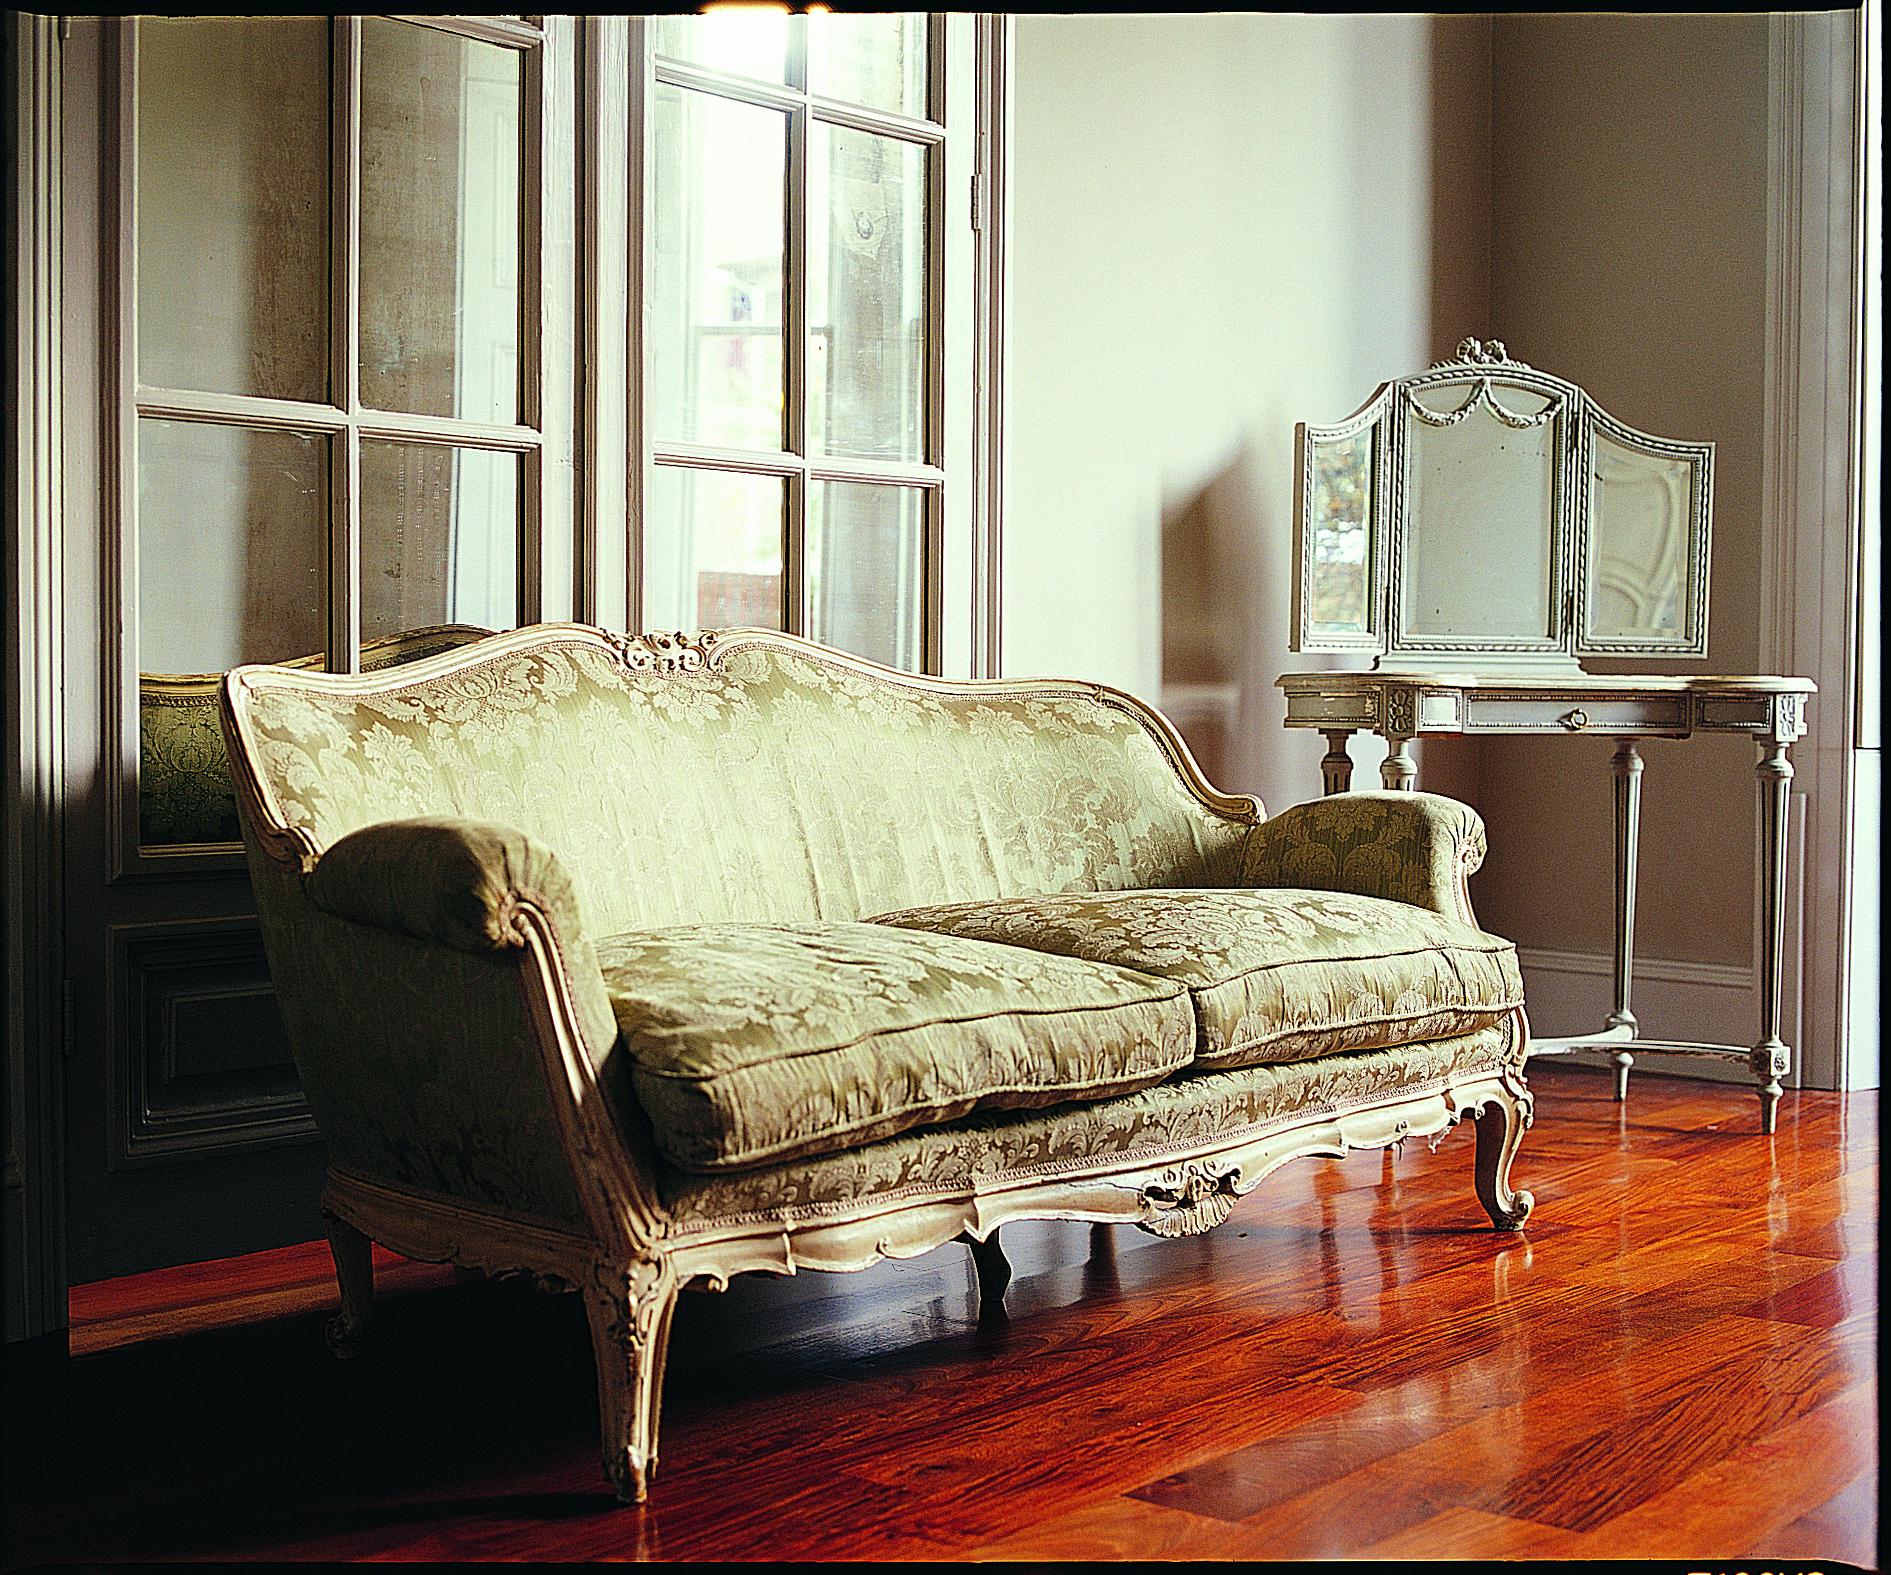 Freistehendes, handgeschnitztes Sofa im Stil Louis XV mit geschwungener Rückenlehne. Handgefertigt in antikem Weiß und leicht gealtert. Gepolstert in einem Lelievre-Damaststoff mit tiefen, gefüllten Federkissen. Der Preis beinhaltet den Stoff wie